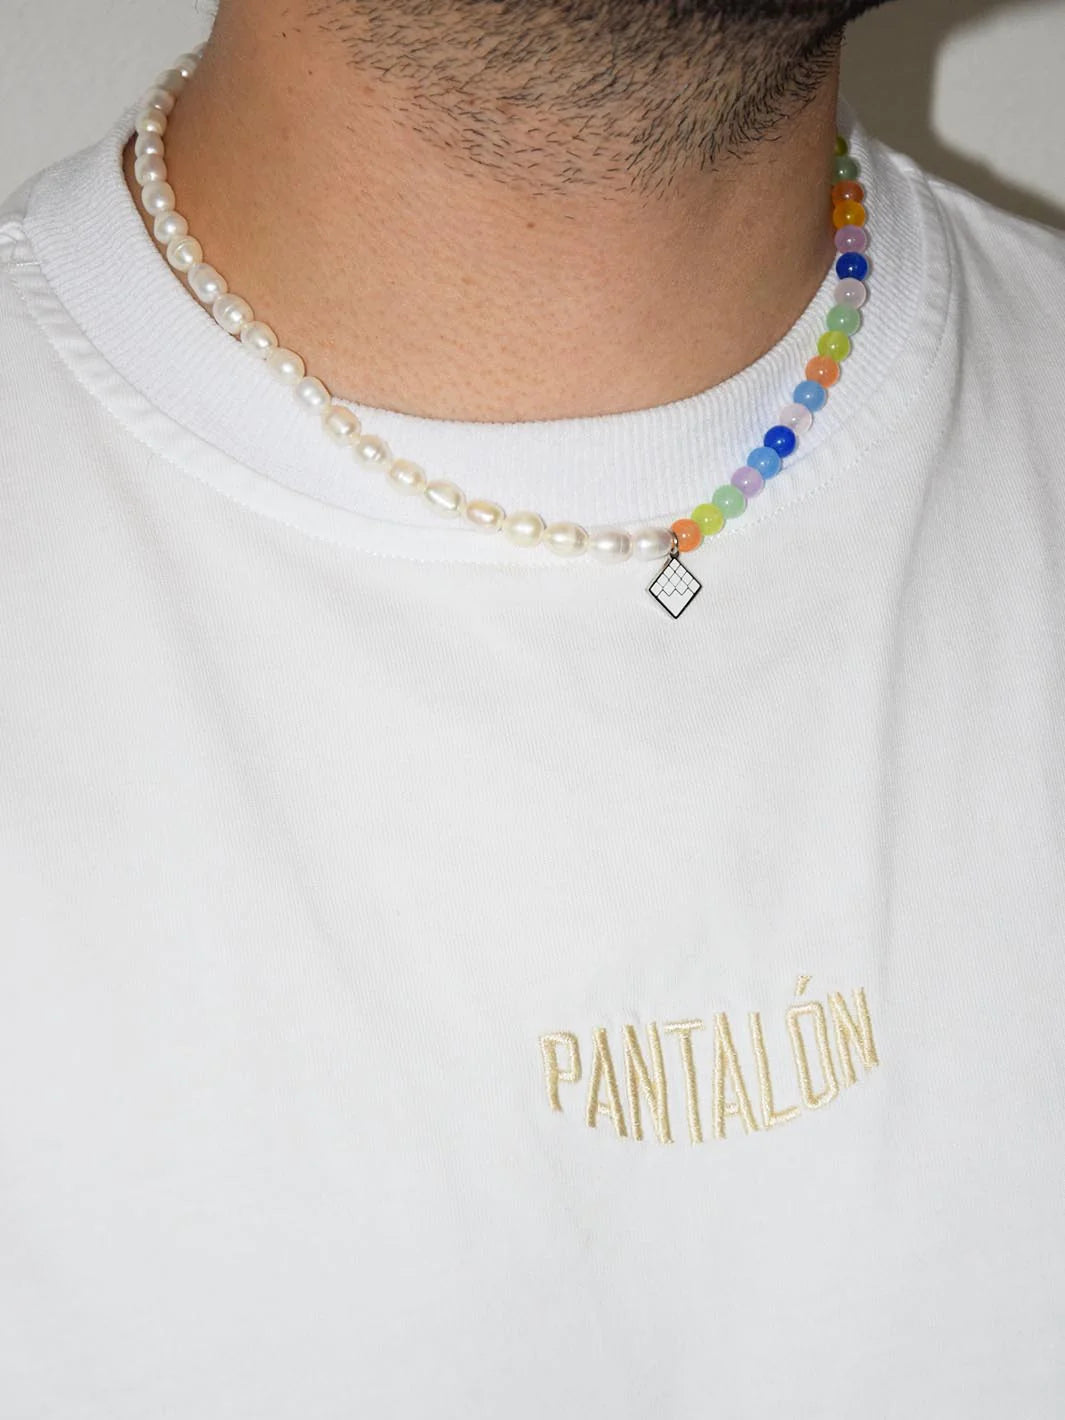 Pantalón Rainbow Pearl Necklace